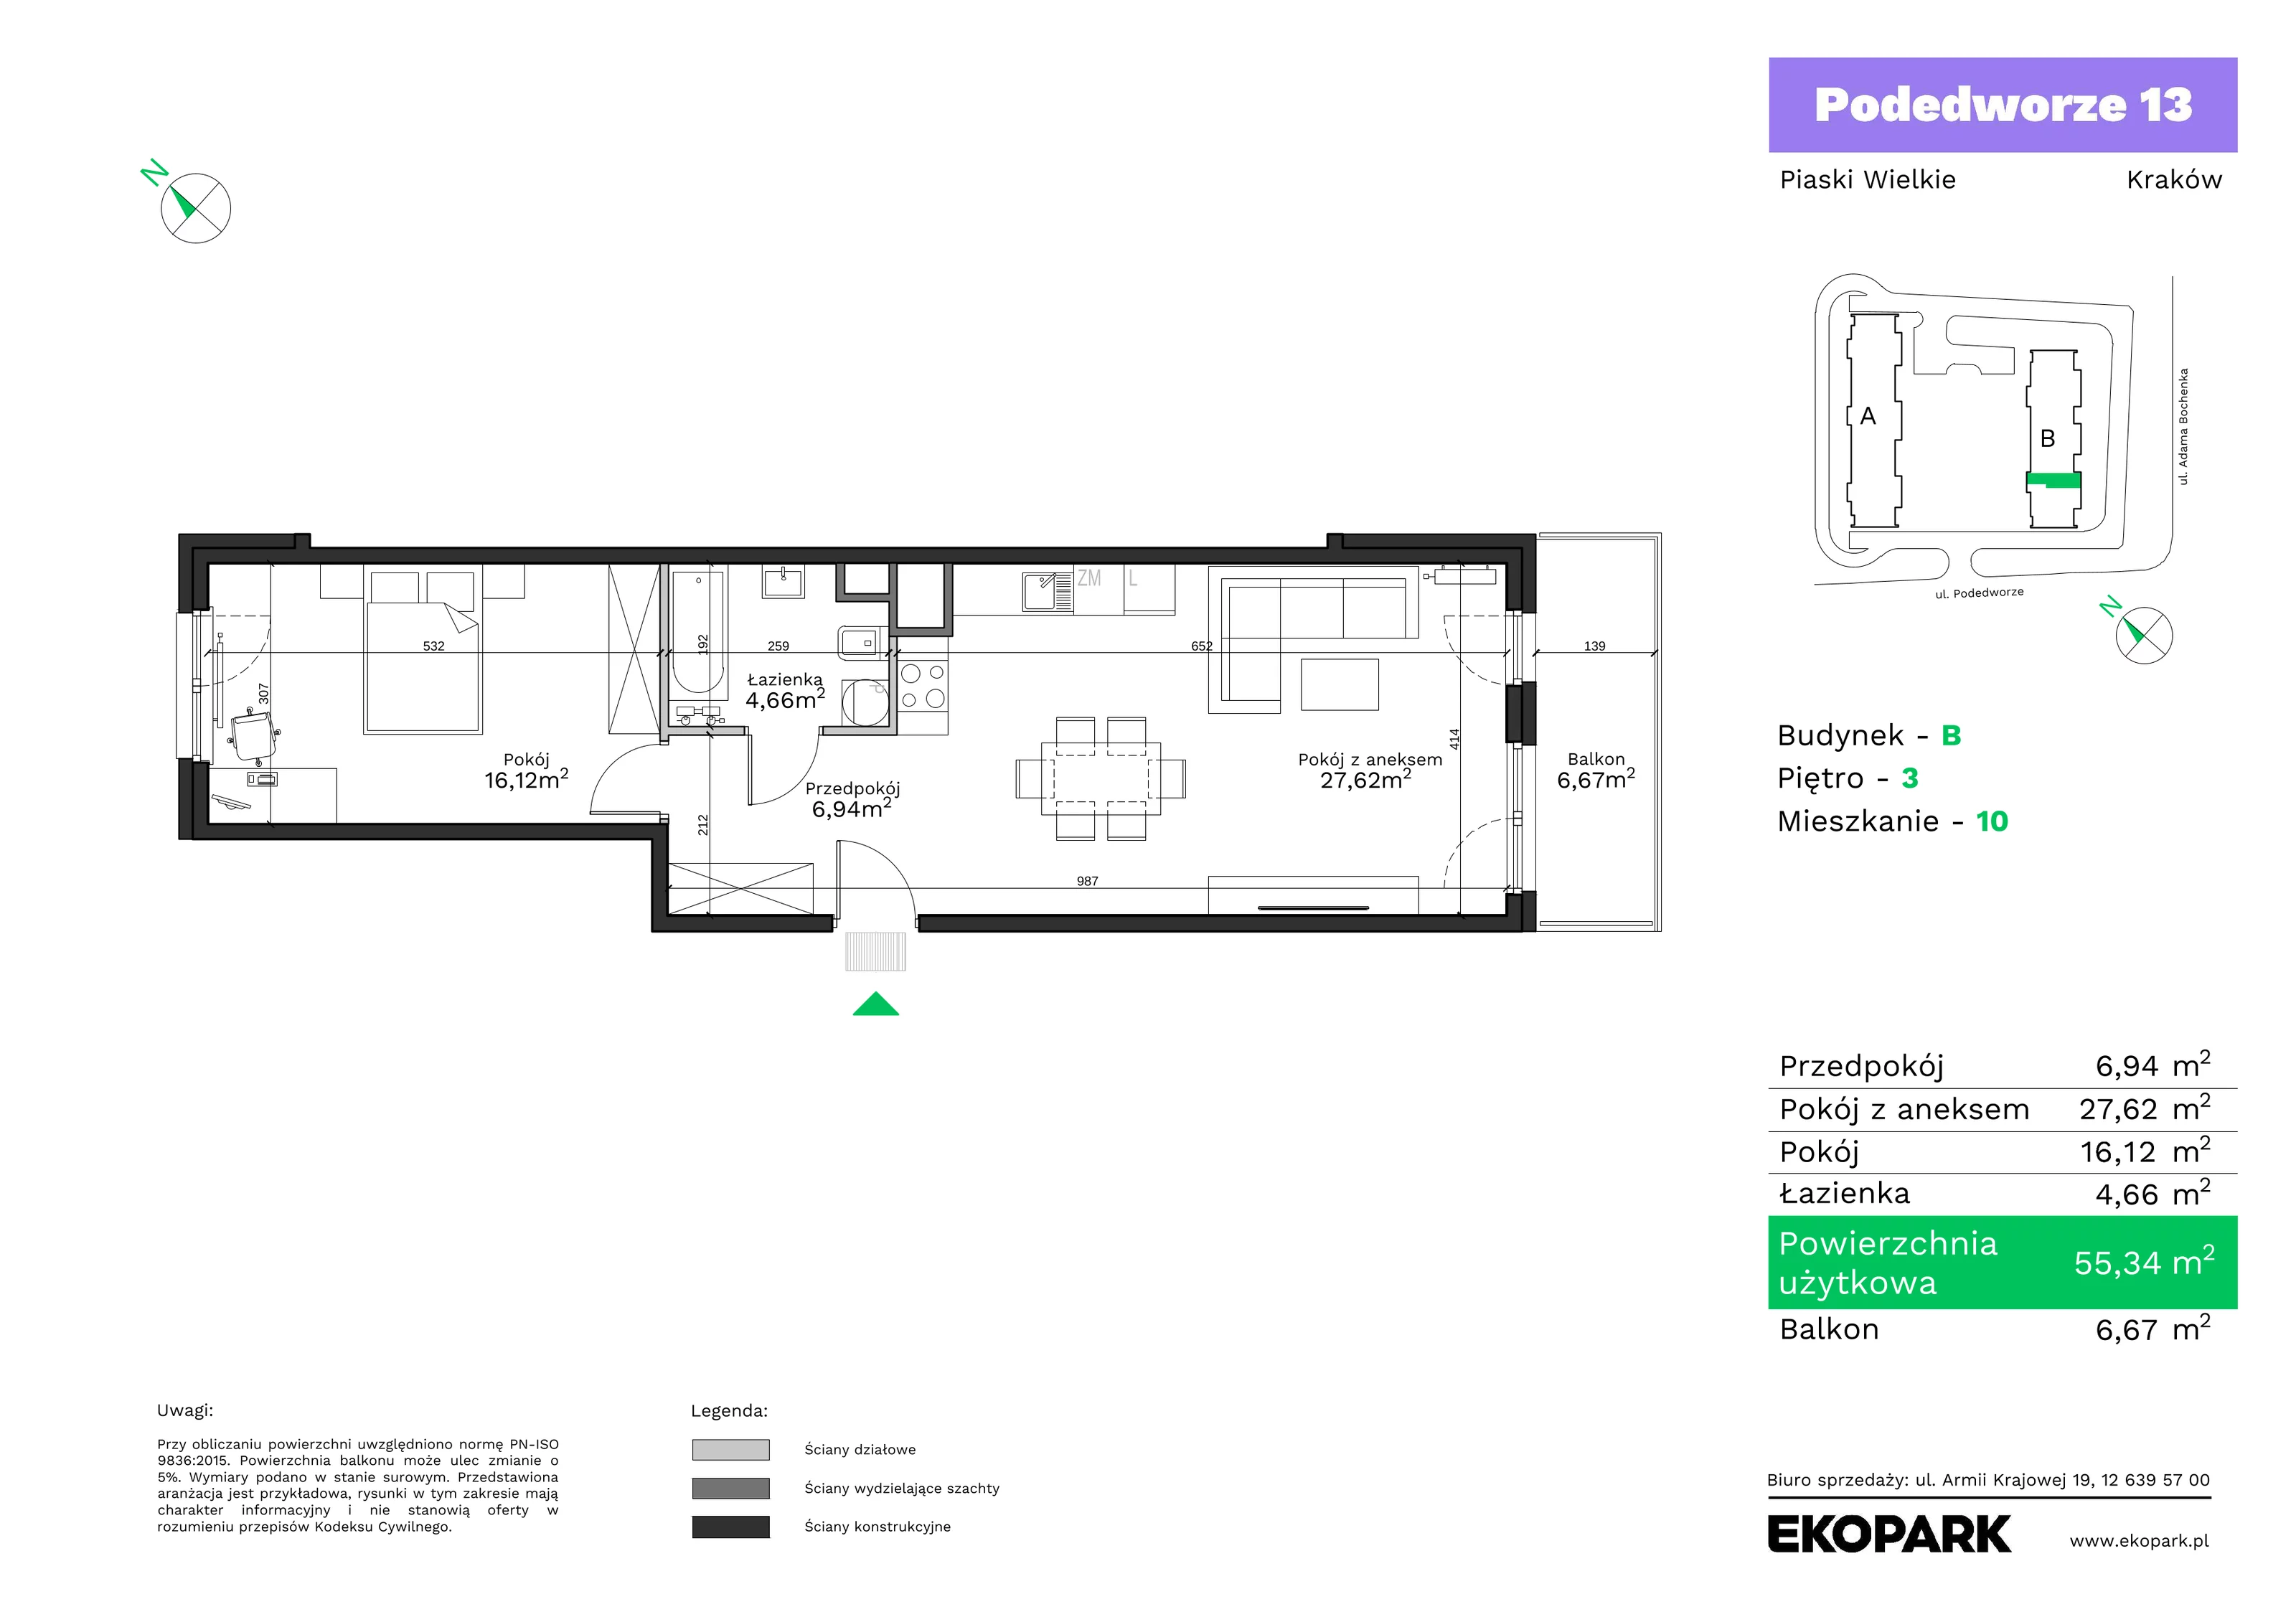 Mieszkanie 55,34 m², piętro 3, oferta nr B10, Podedworze 13, Kraków, Podgórze Duchackie, Piaski Wielkie, ul. Podedworze 13